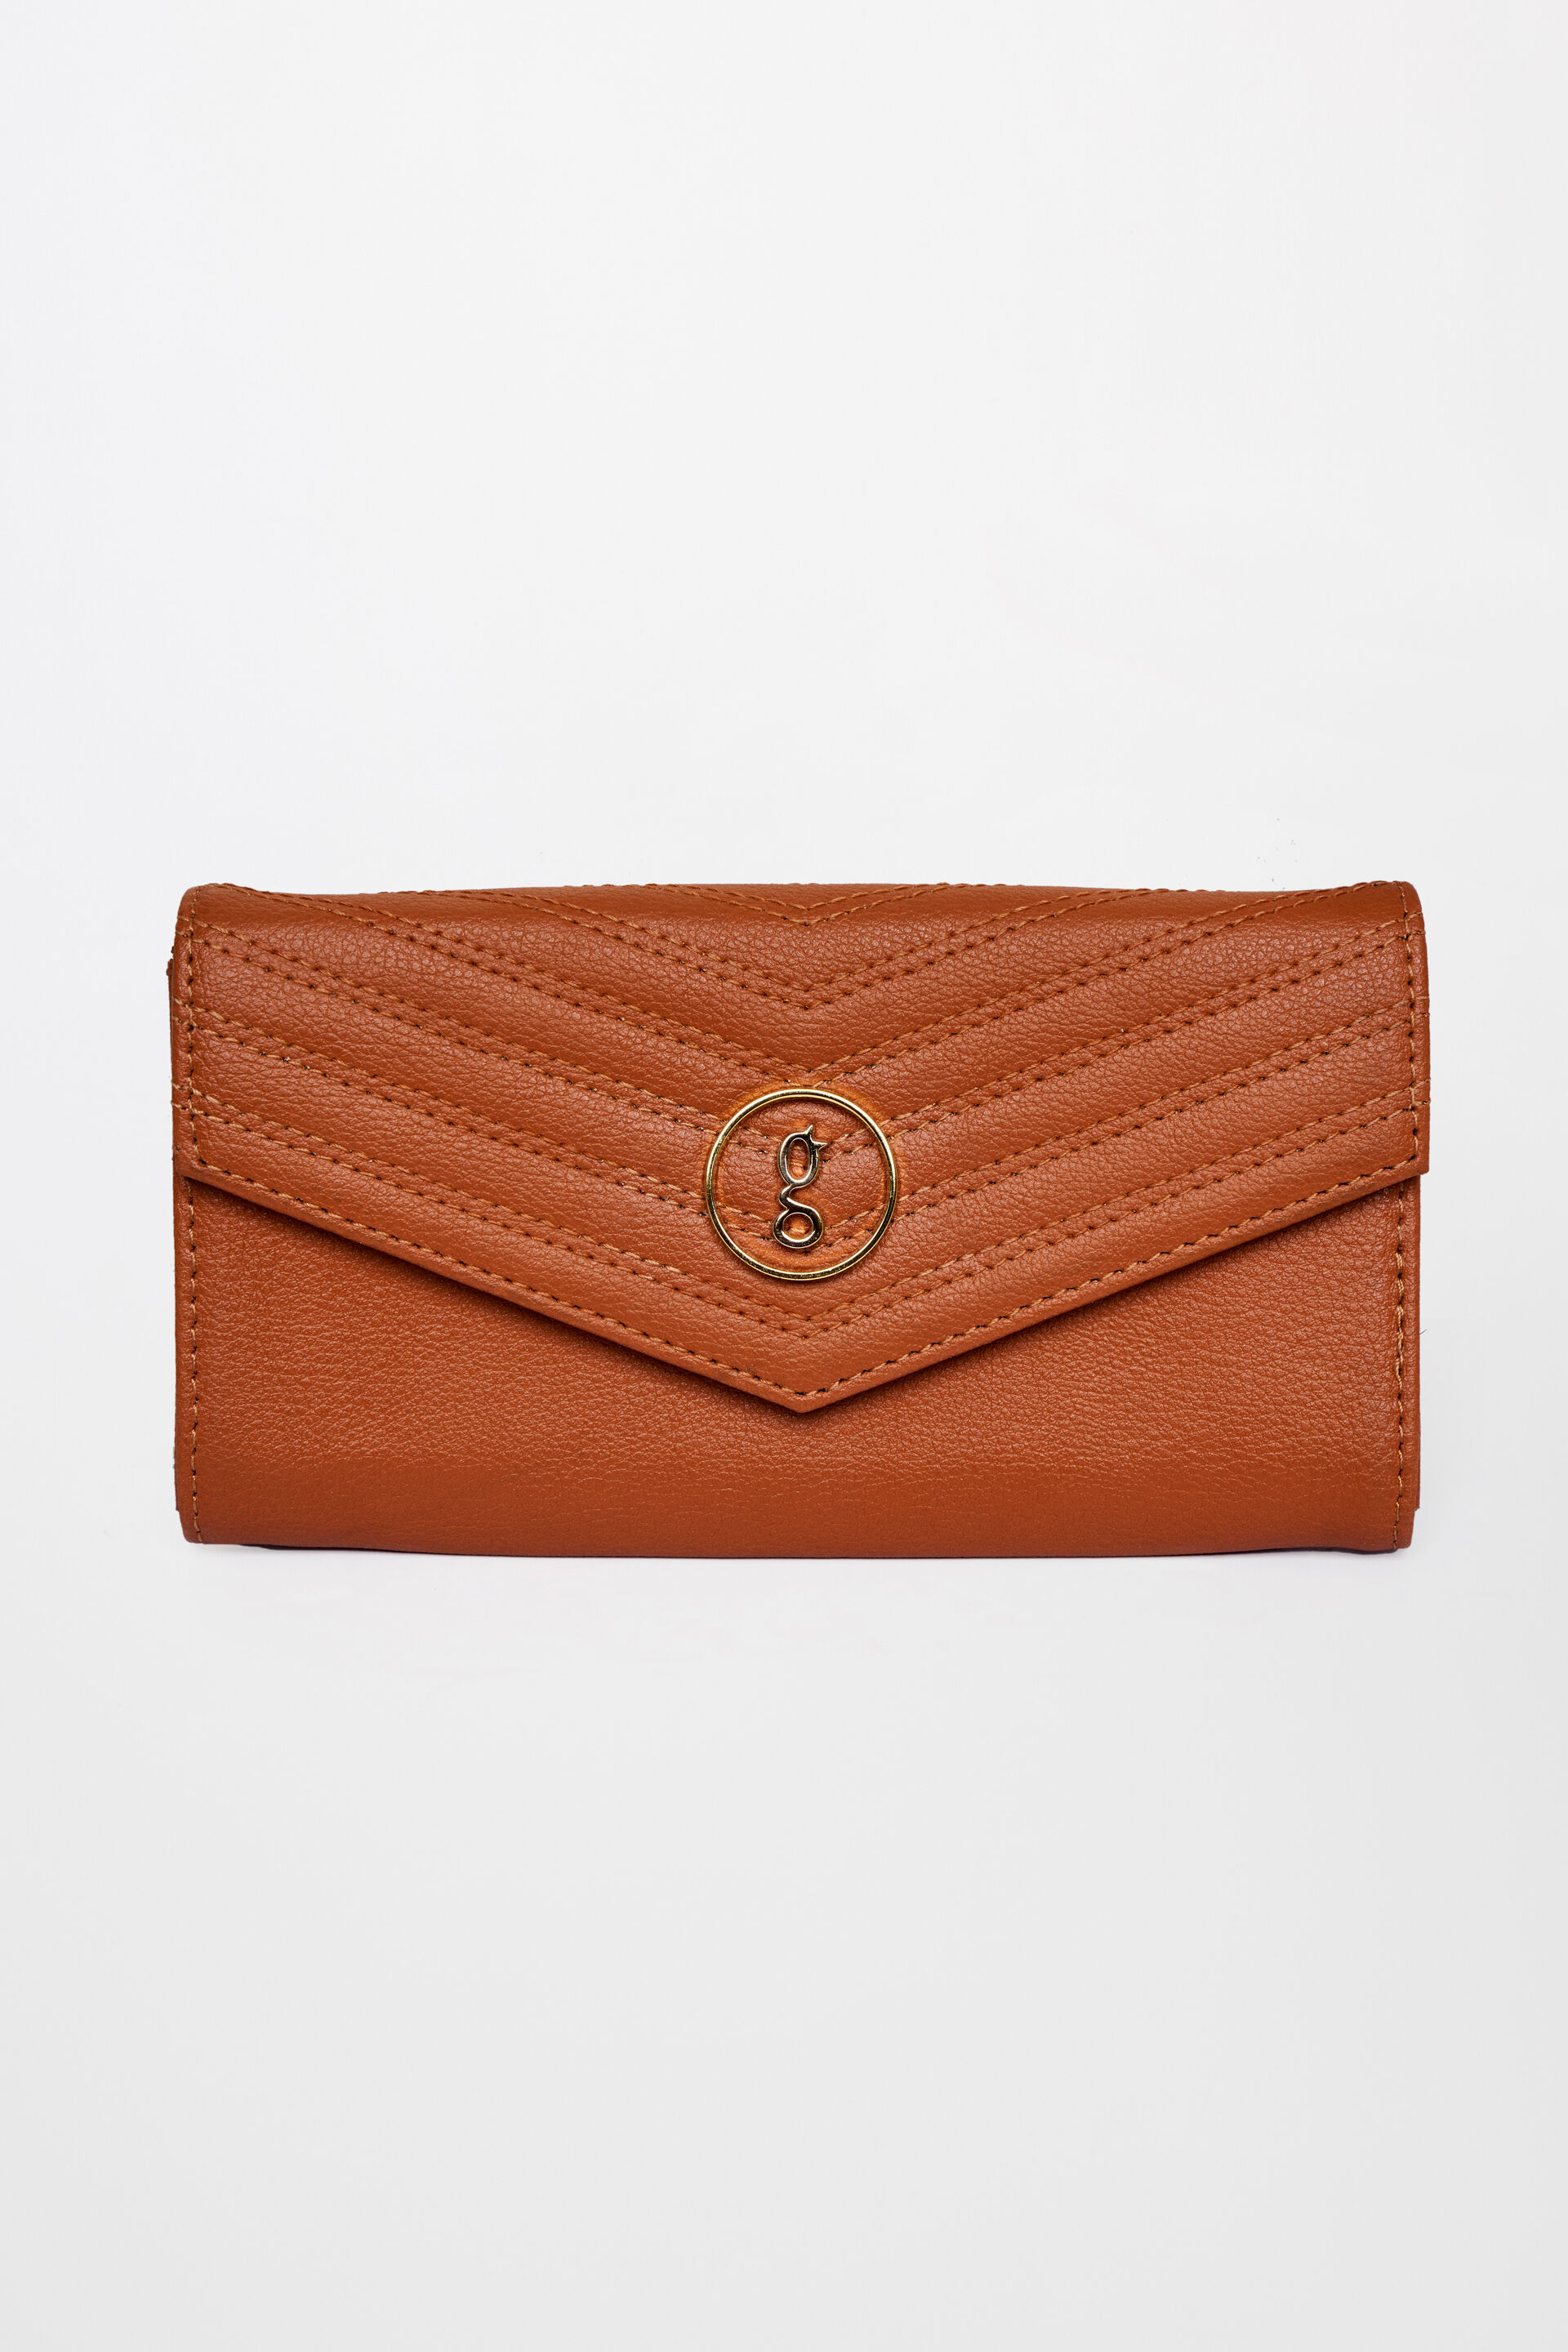 Buy Brown Color Ladies Handbag 7 Inch Online at Best Prices